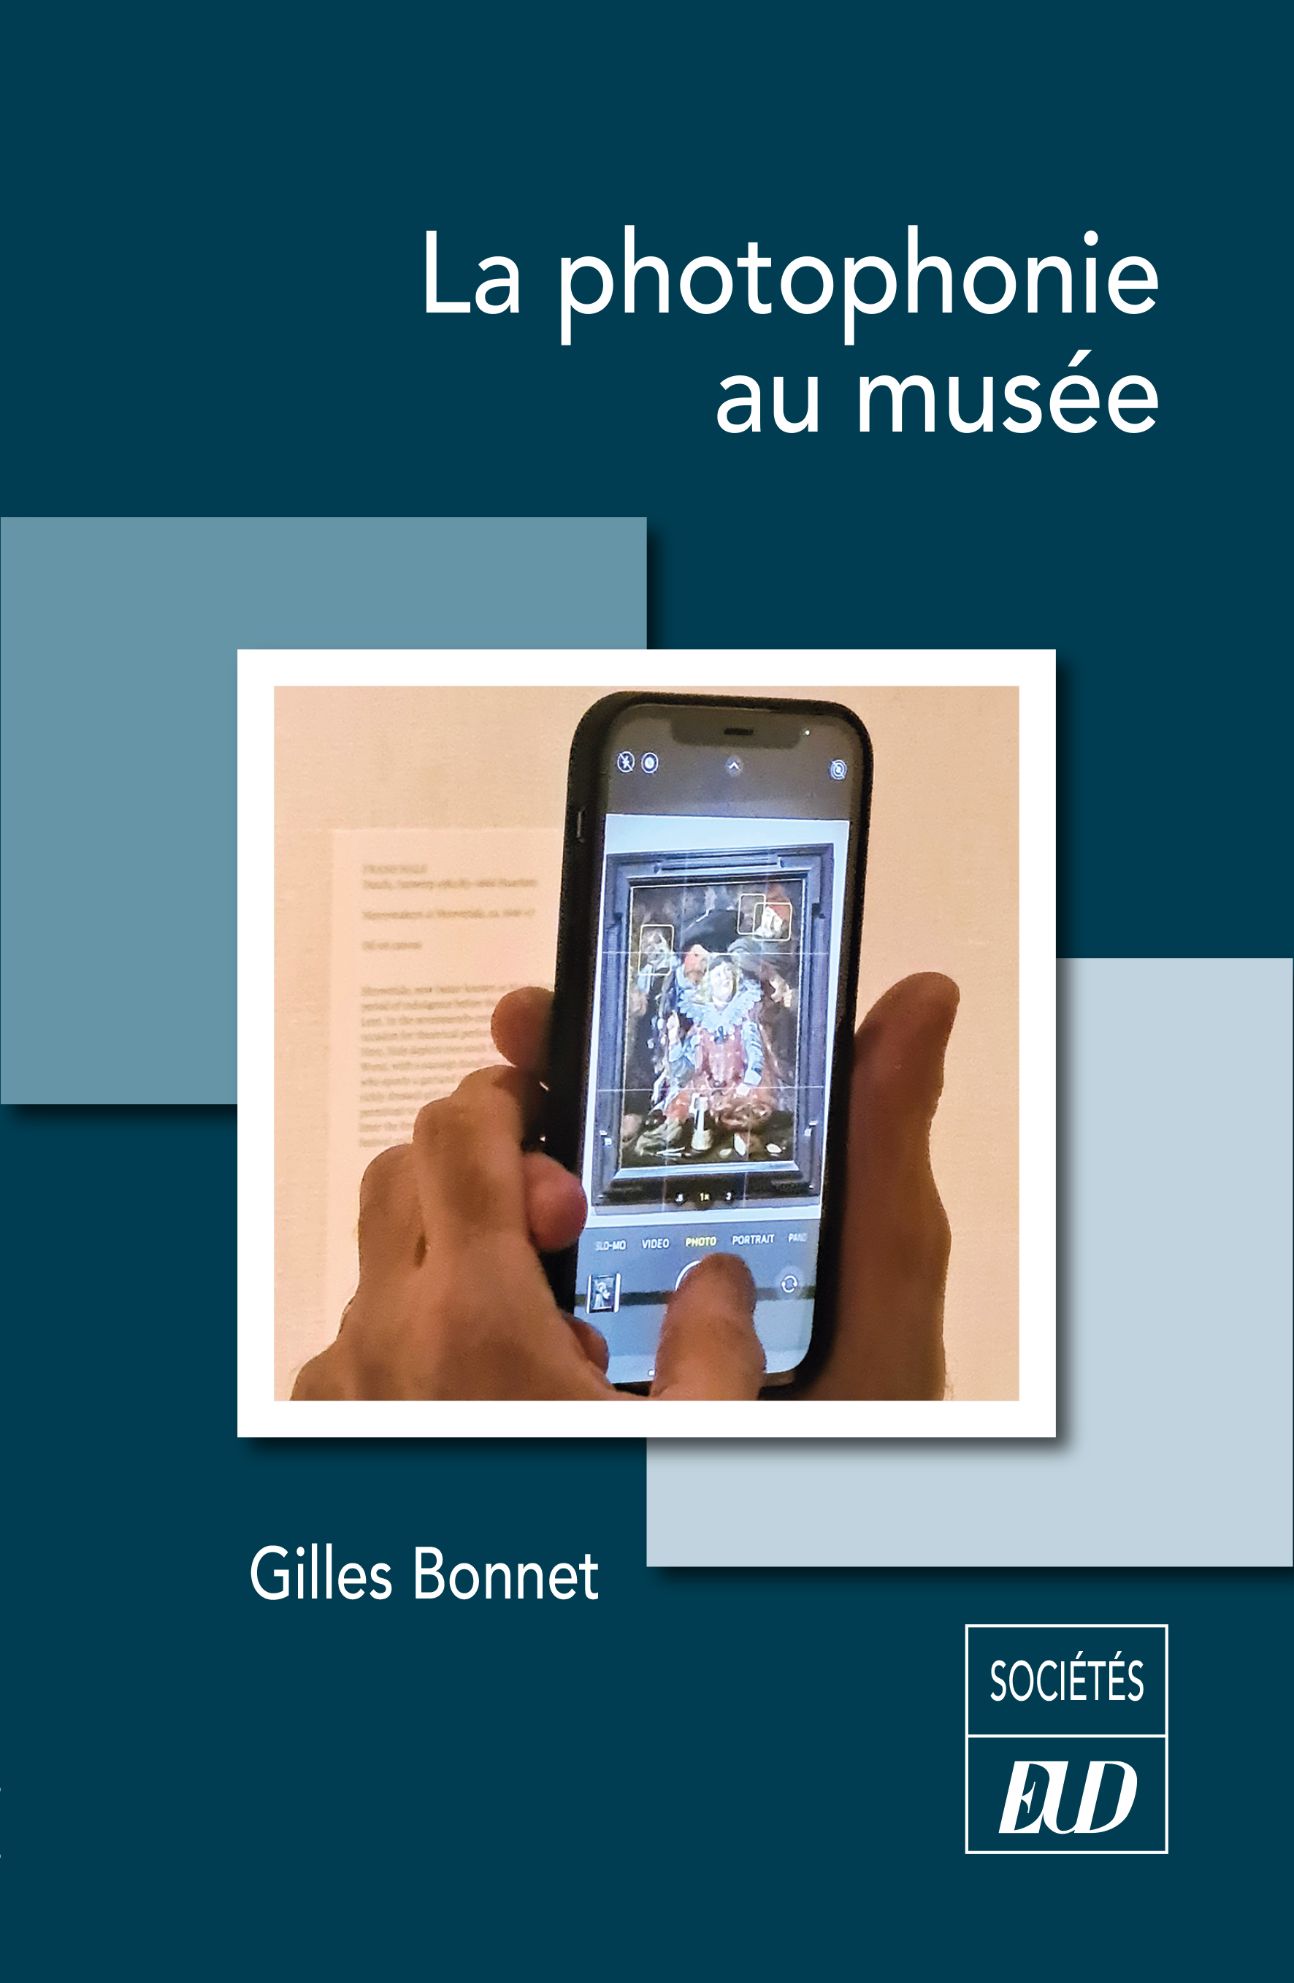 Gilles Bonnet, La Photophonie au musée